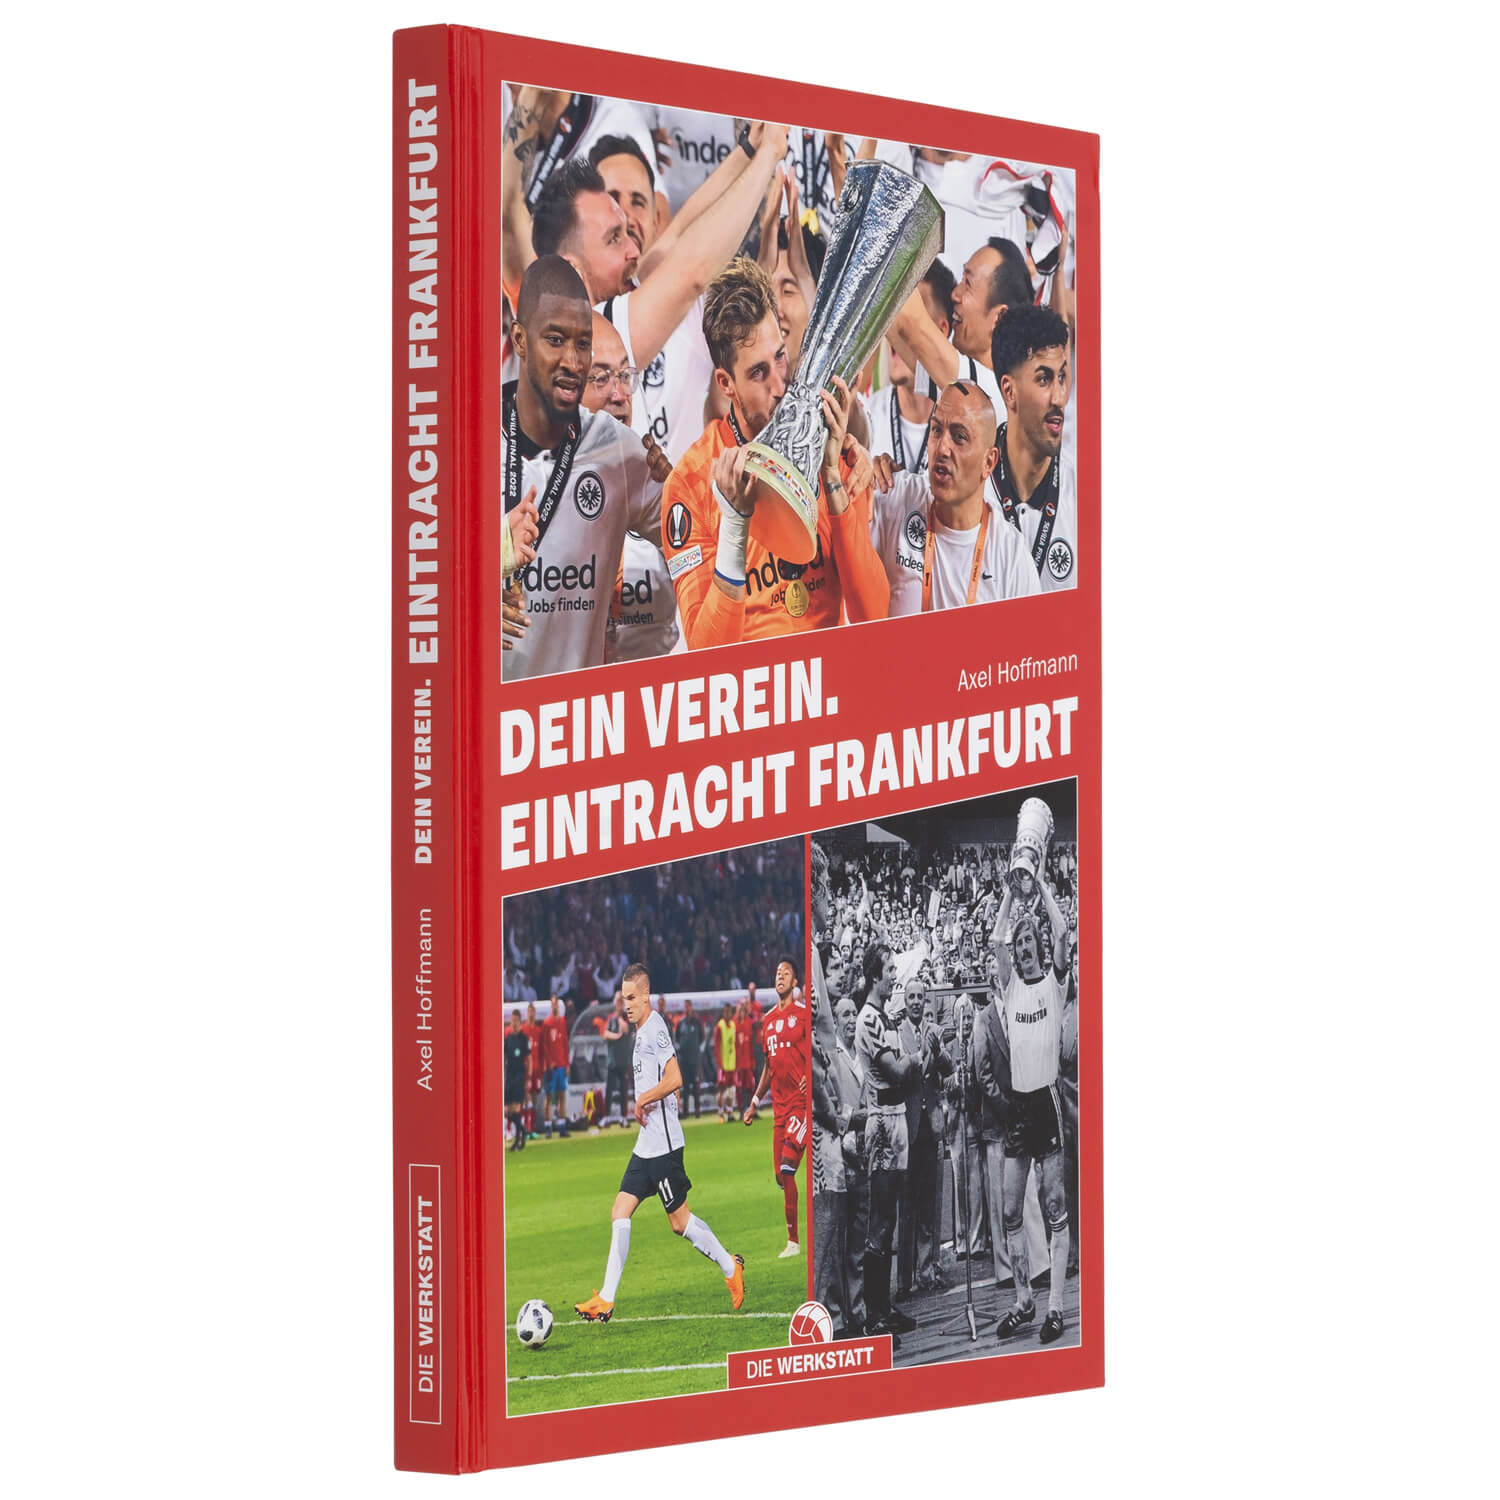 Bild 2: Buch Dein Verein. Eintracht Frankfurt